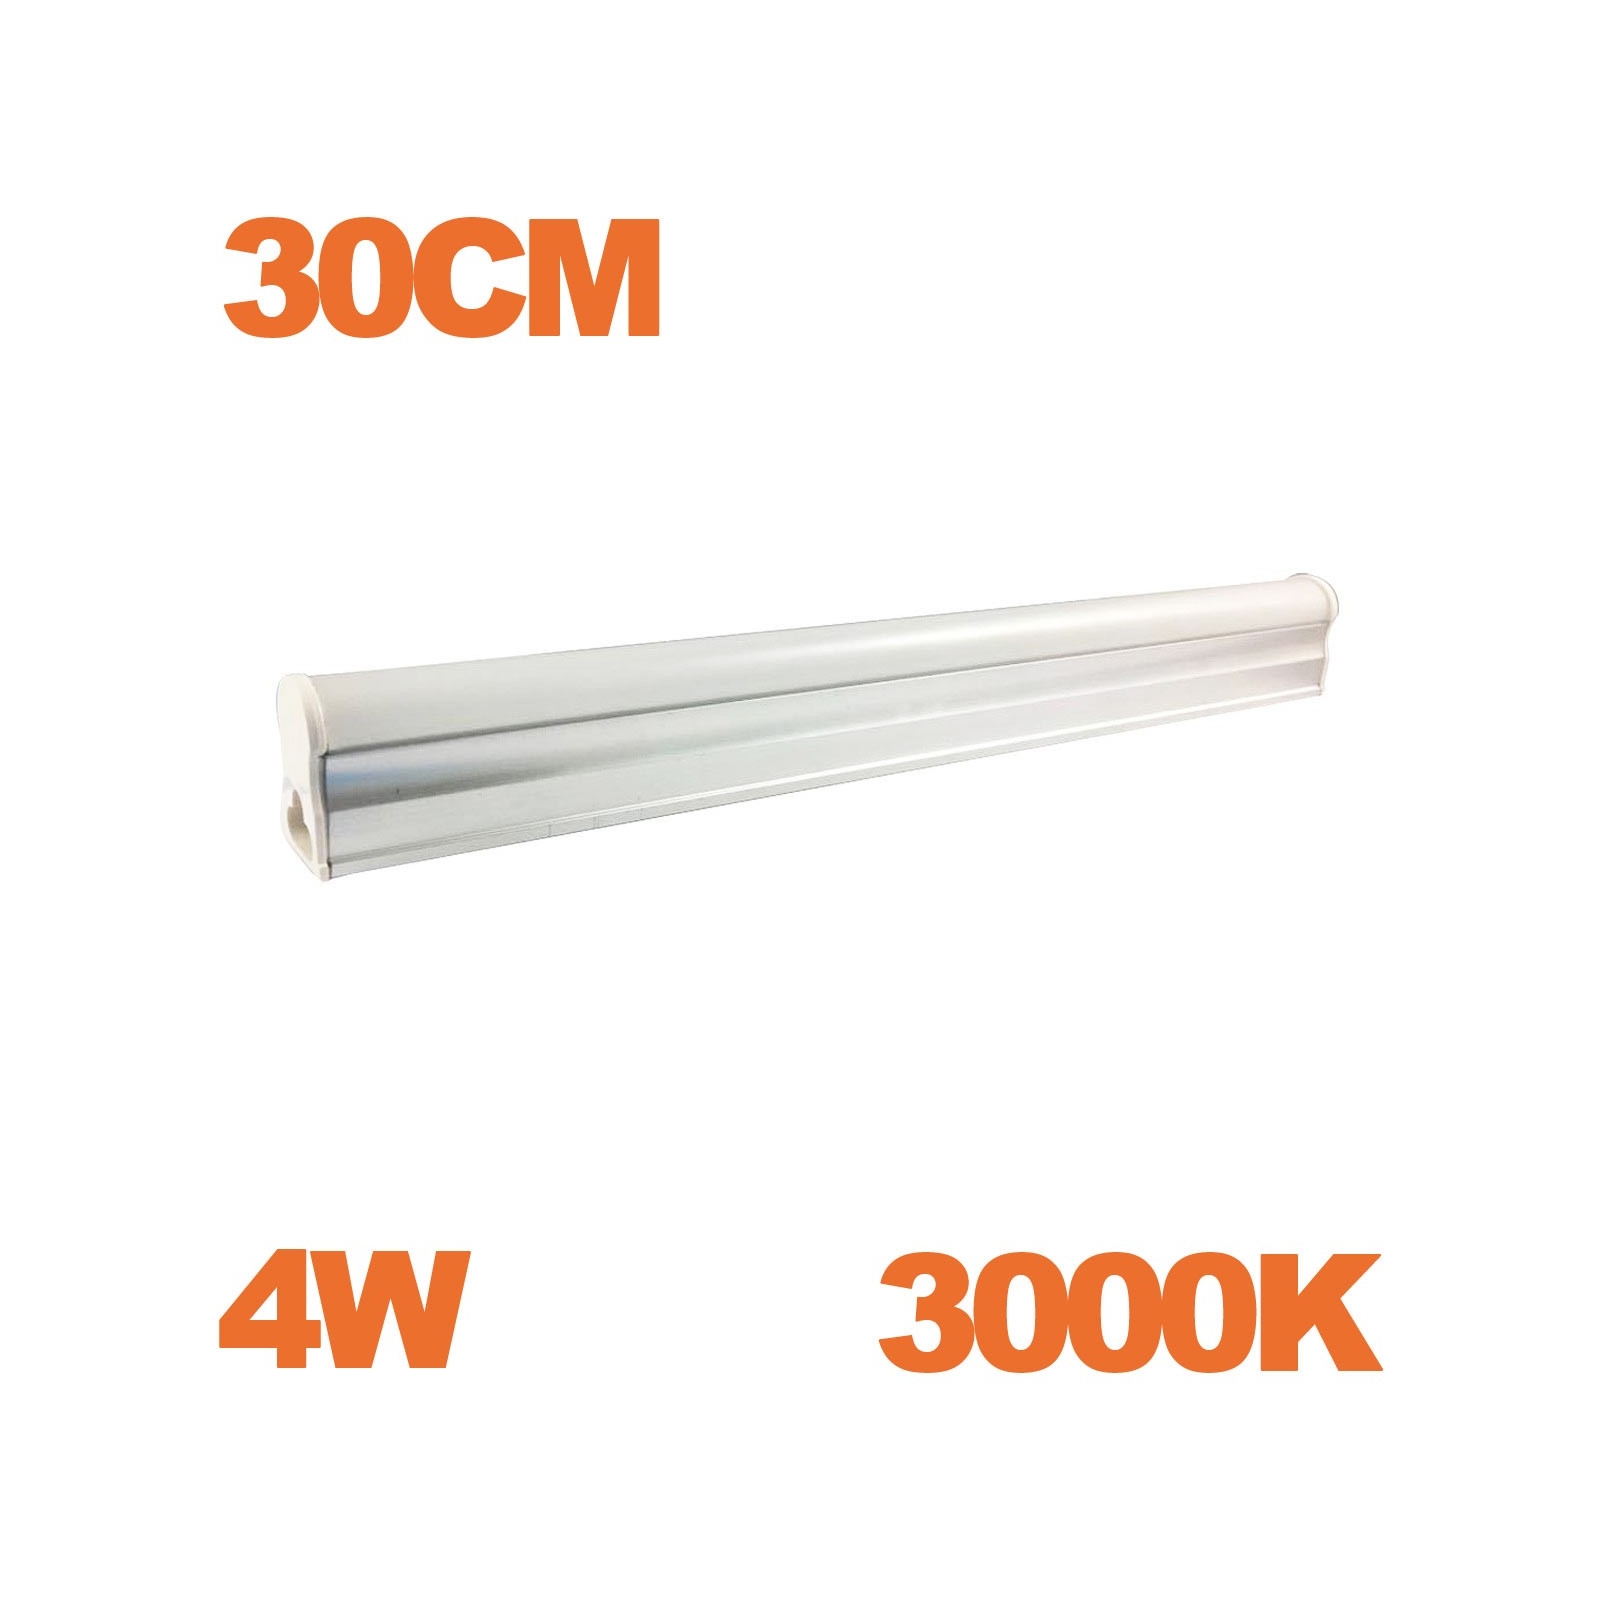 Tube LED T5 Puissance 4W Longueur 30cm Blanc Chaud 3000K